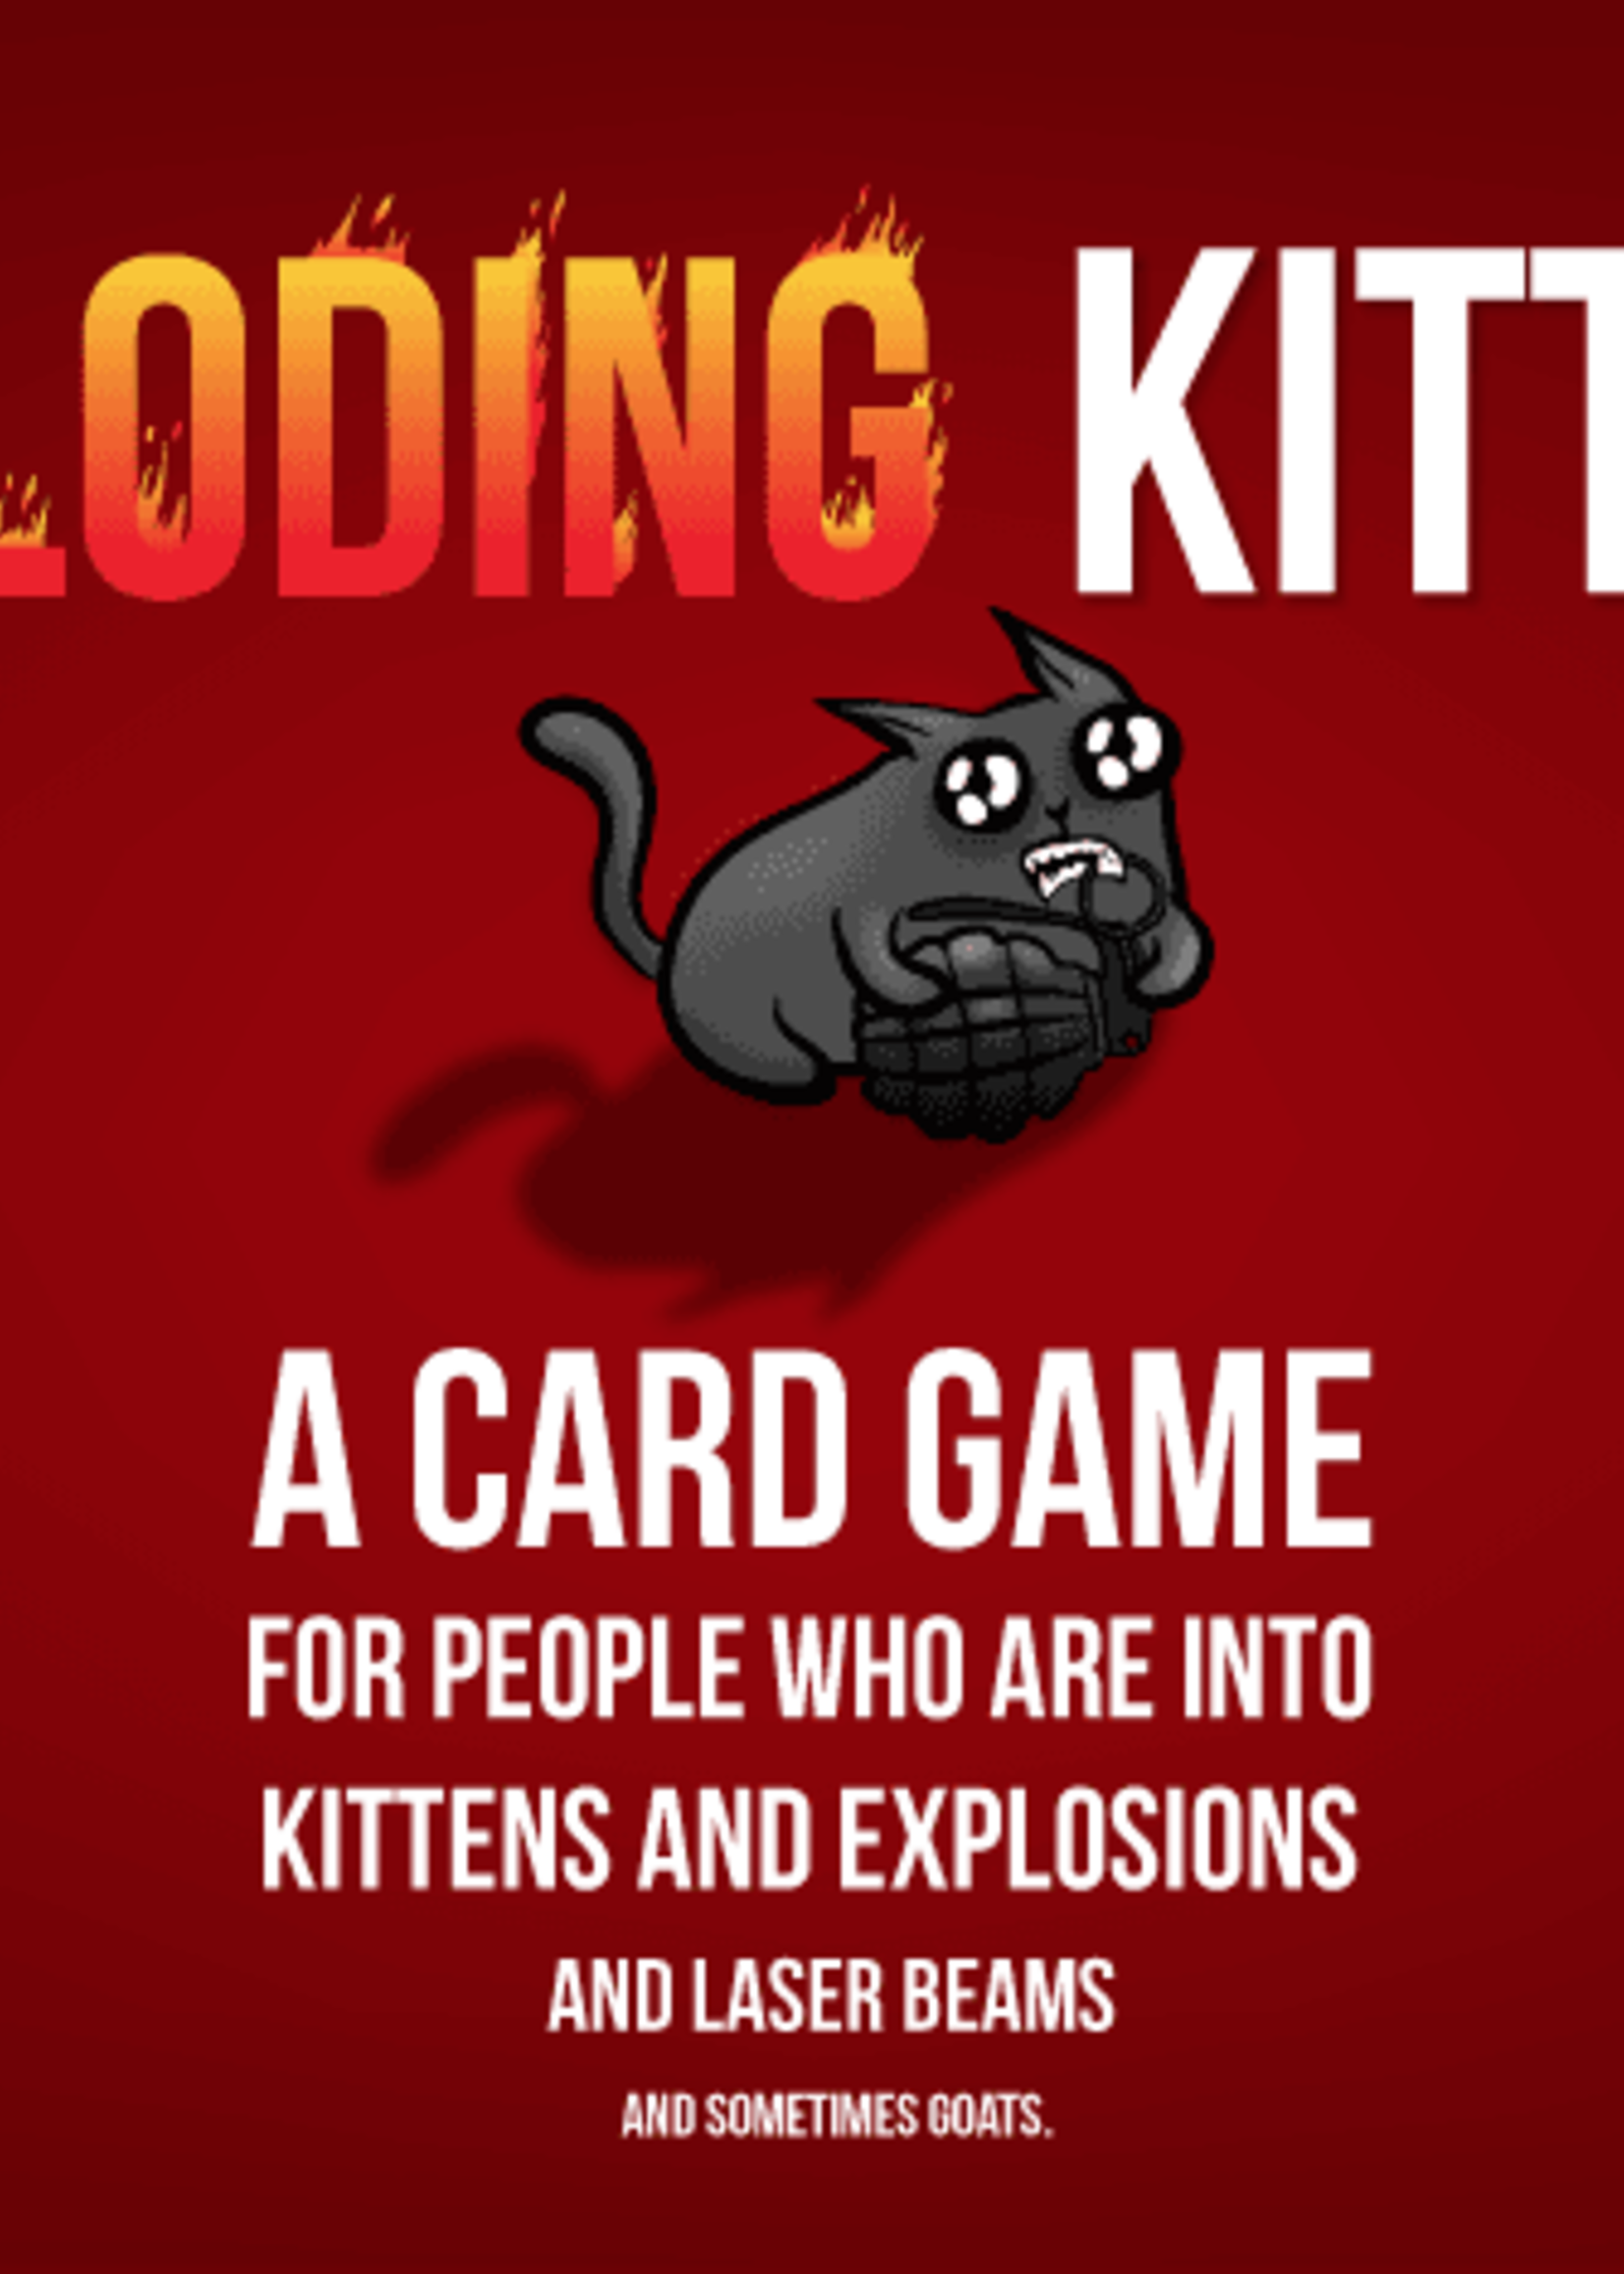 Exploding Kittens Exploding Kittens Original Edition